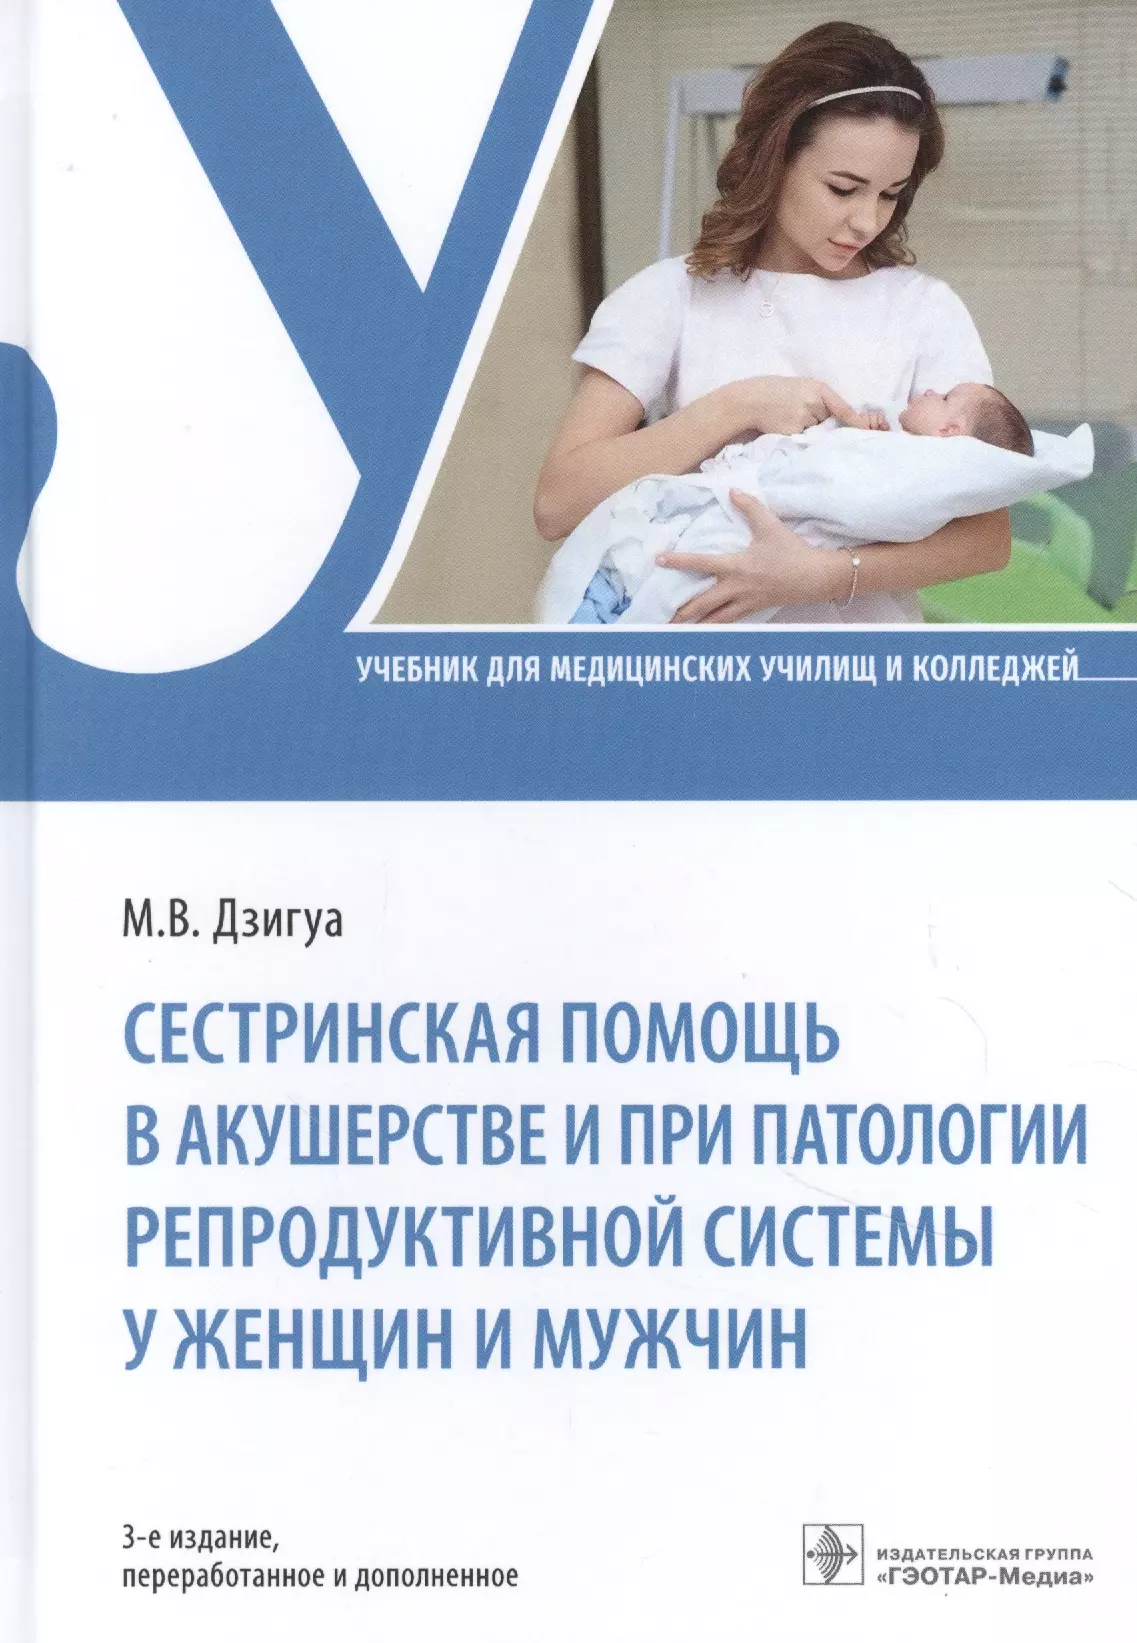 Дзигуа Манана Владимировна - Сестринская помощь в акушерстве и при патологии репродуктивной системы у женщин и мужчин